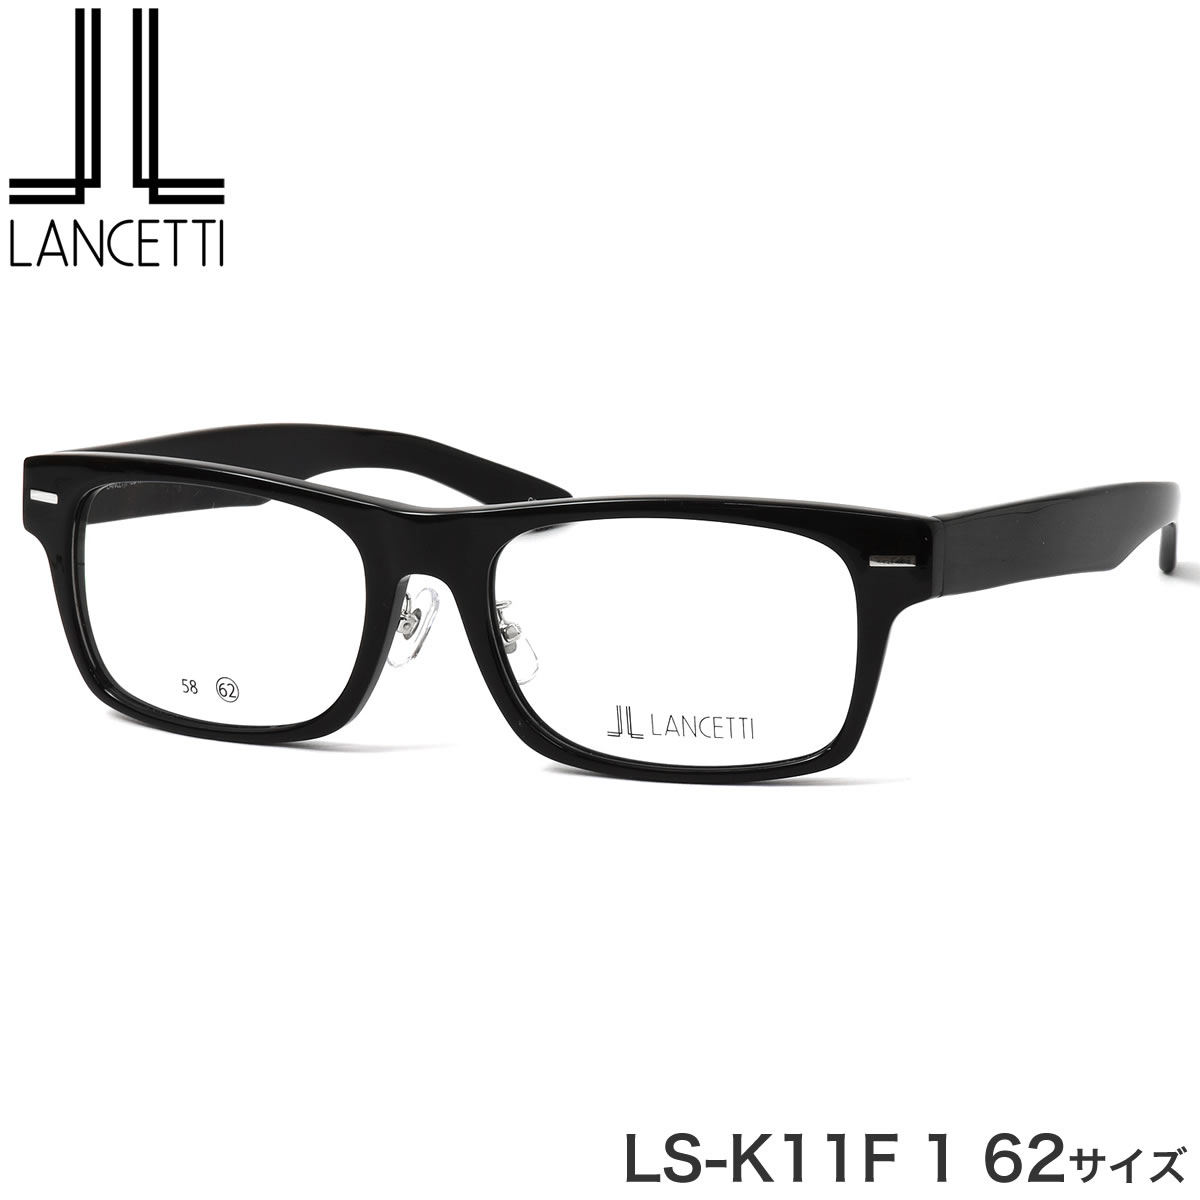 大きいサイズ ランチェッティ LANCETTI メガネ サングラス LS-K11F 1 62サイズ ラージサイズ ビッグサイズ キングサイズ 大きめ ワイド ランセッティ プレゼント ギフト メンズ レディース